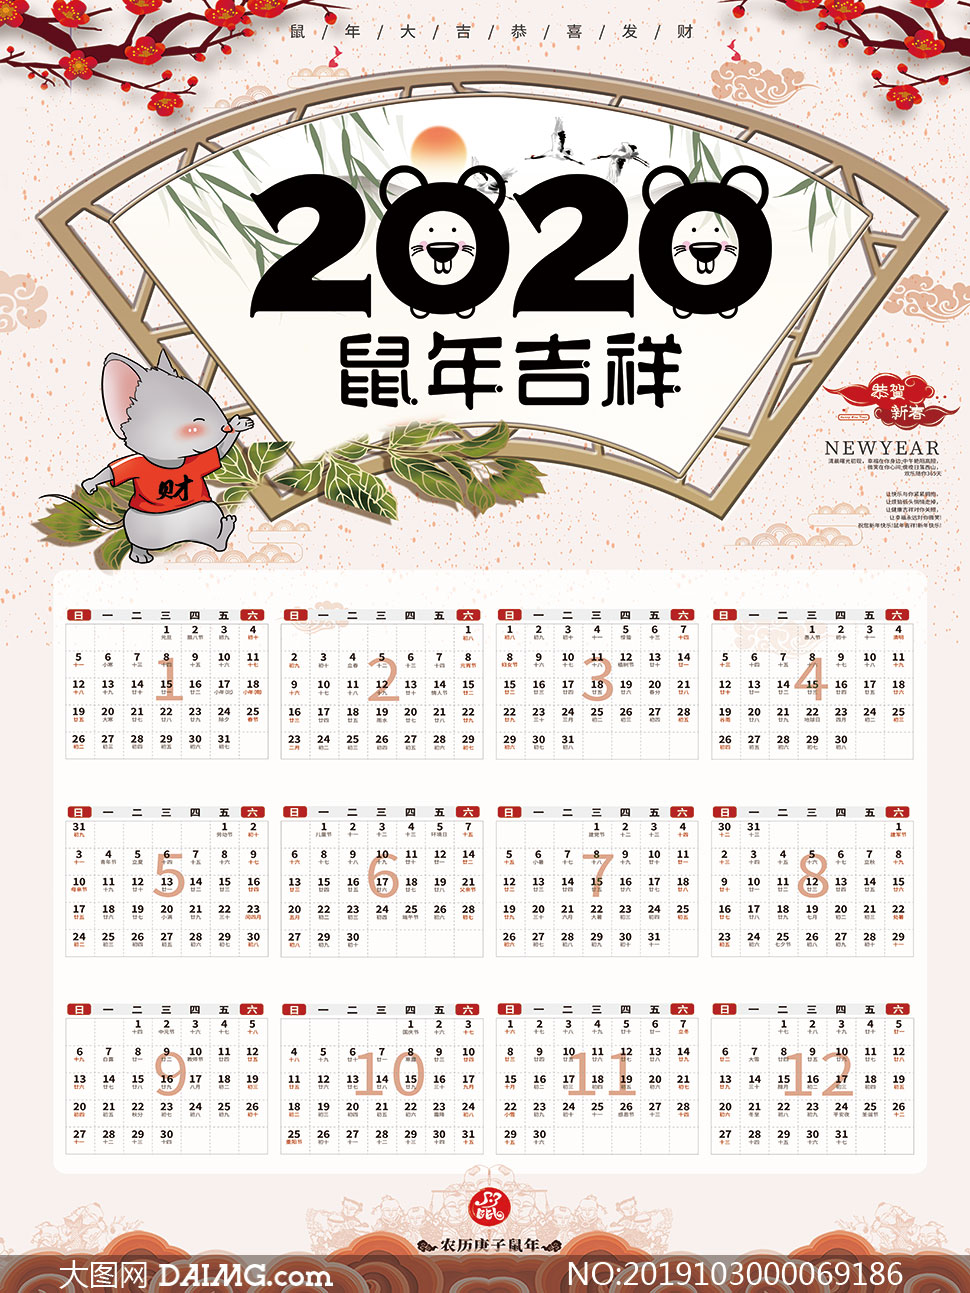 2020鼠年大吉简约年历设计模板psd素材         2020欢度